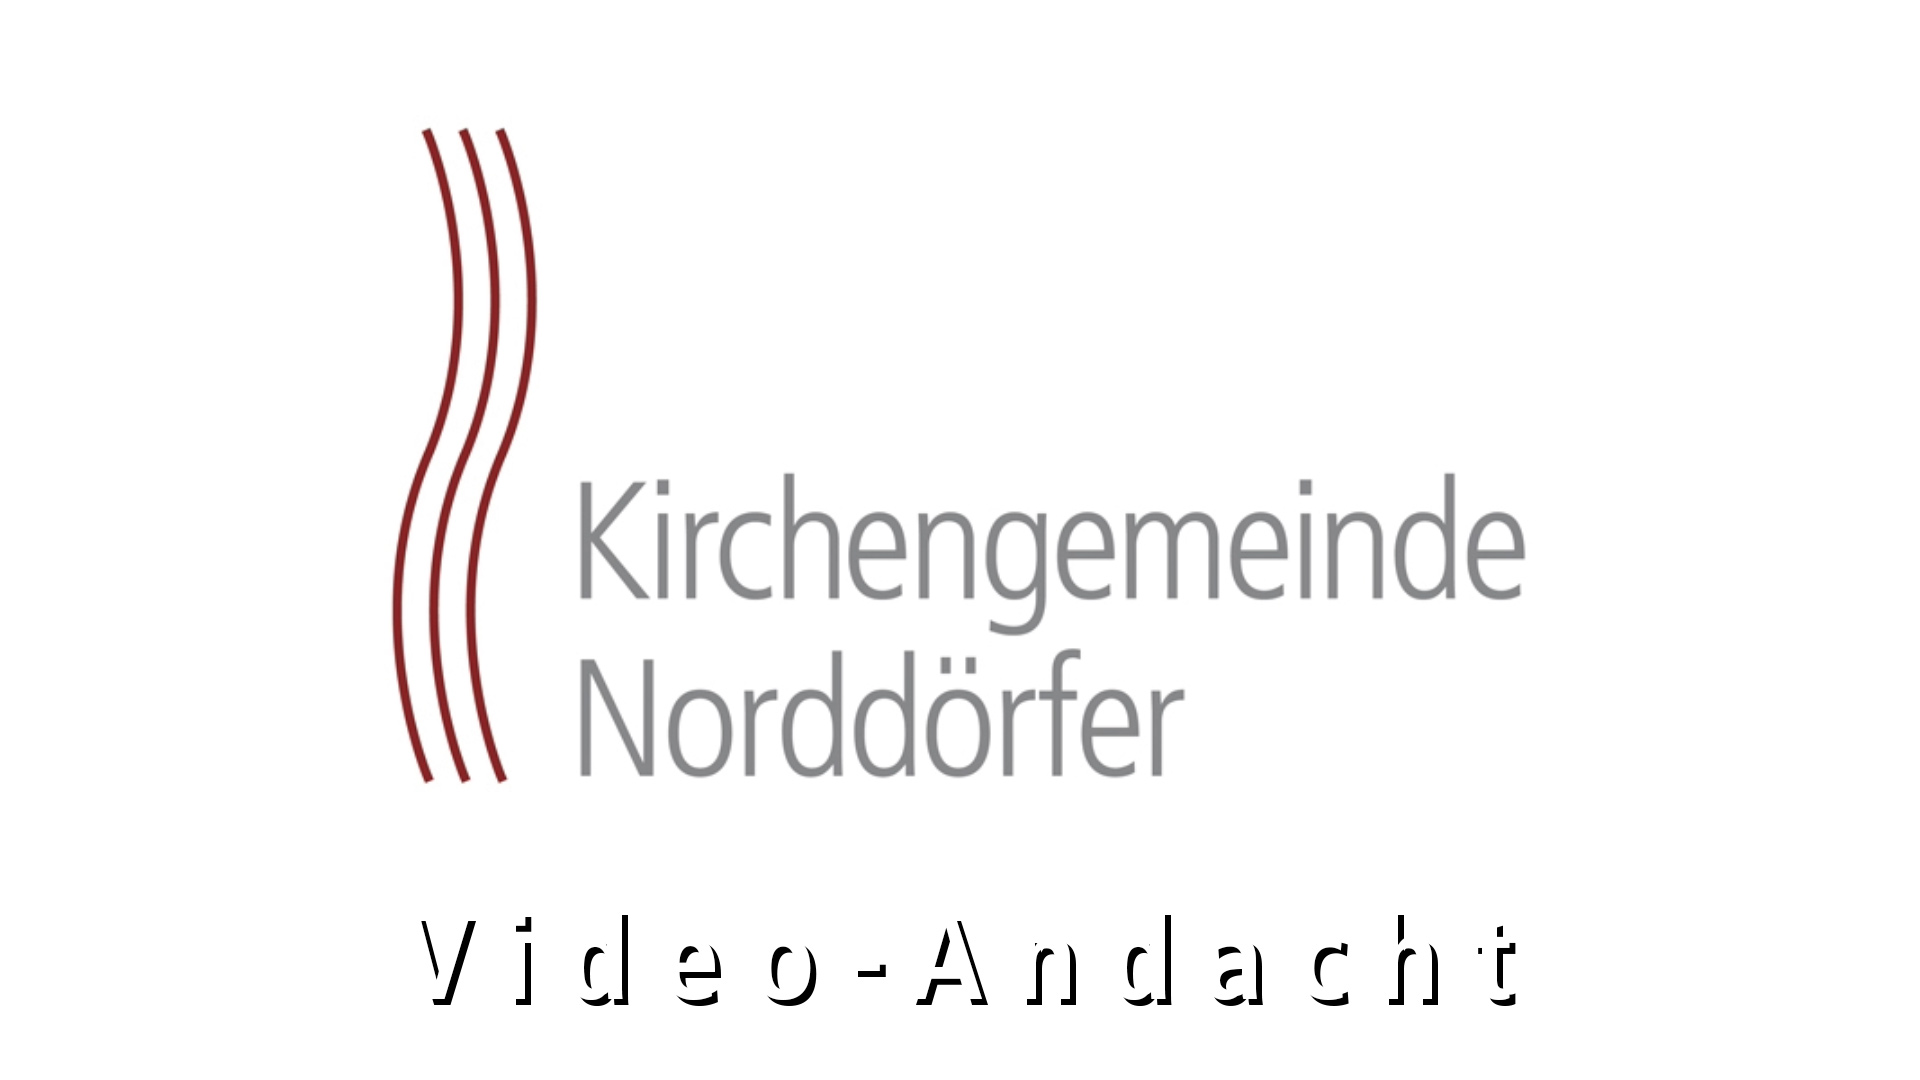 Video Andacht der Kirchengemeinde Norddörfer